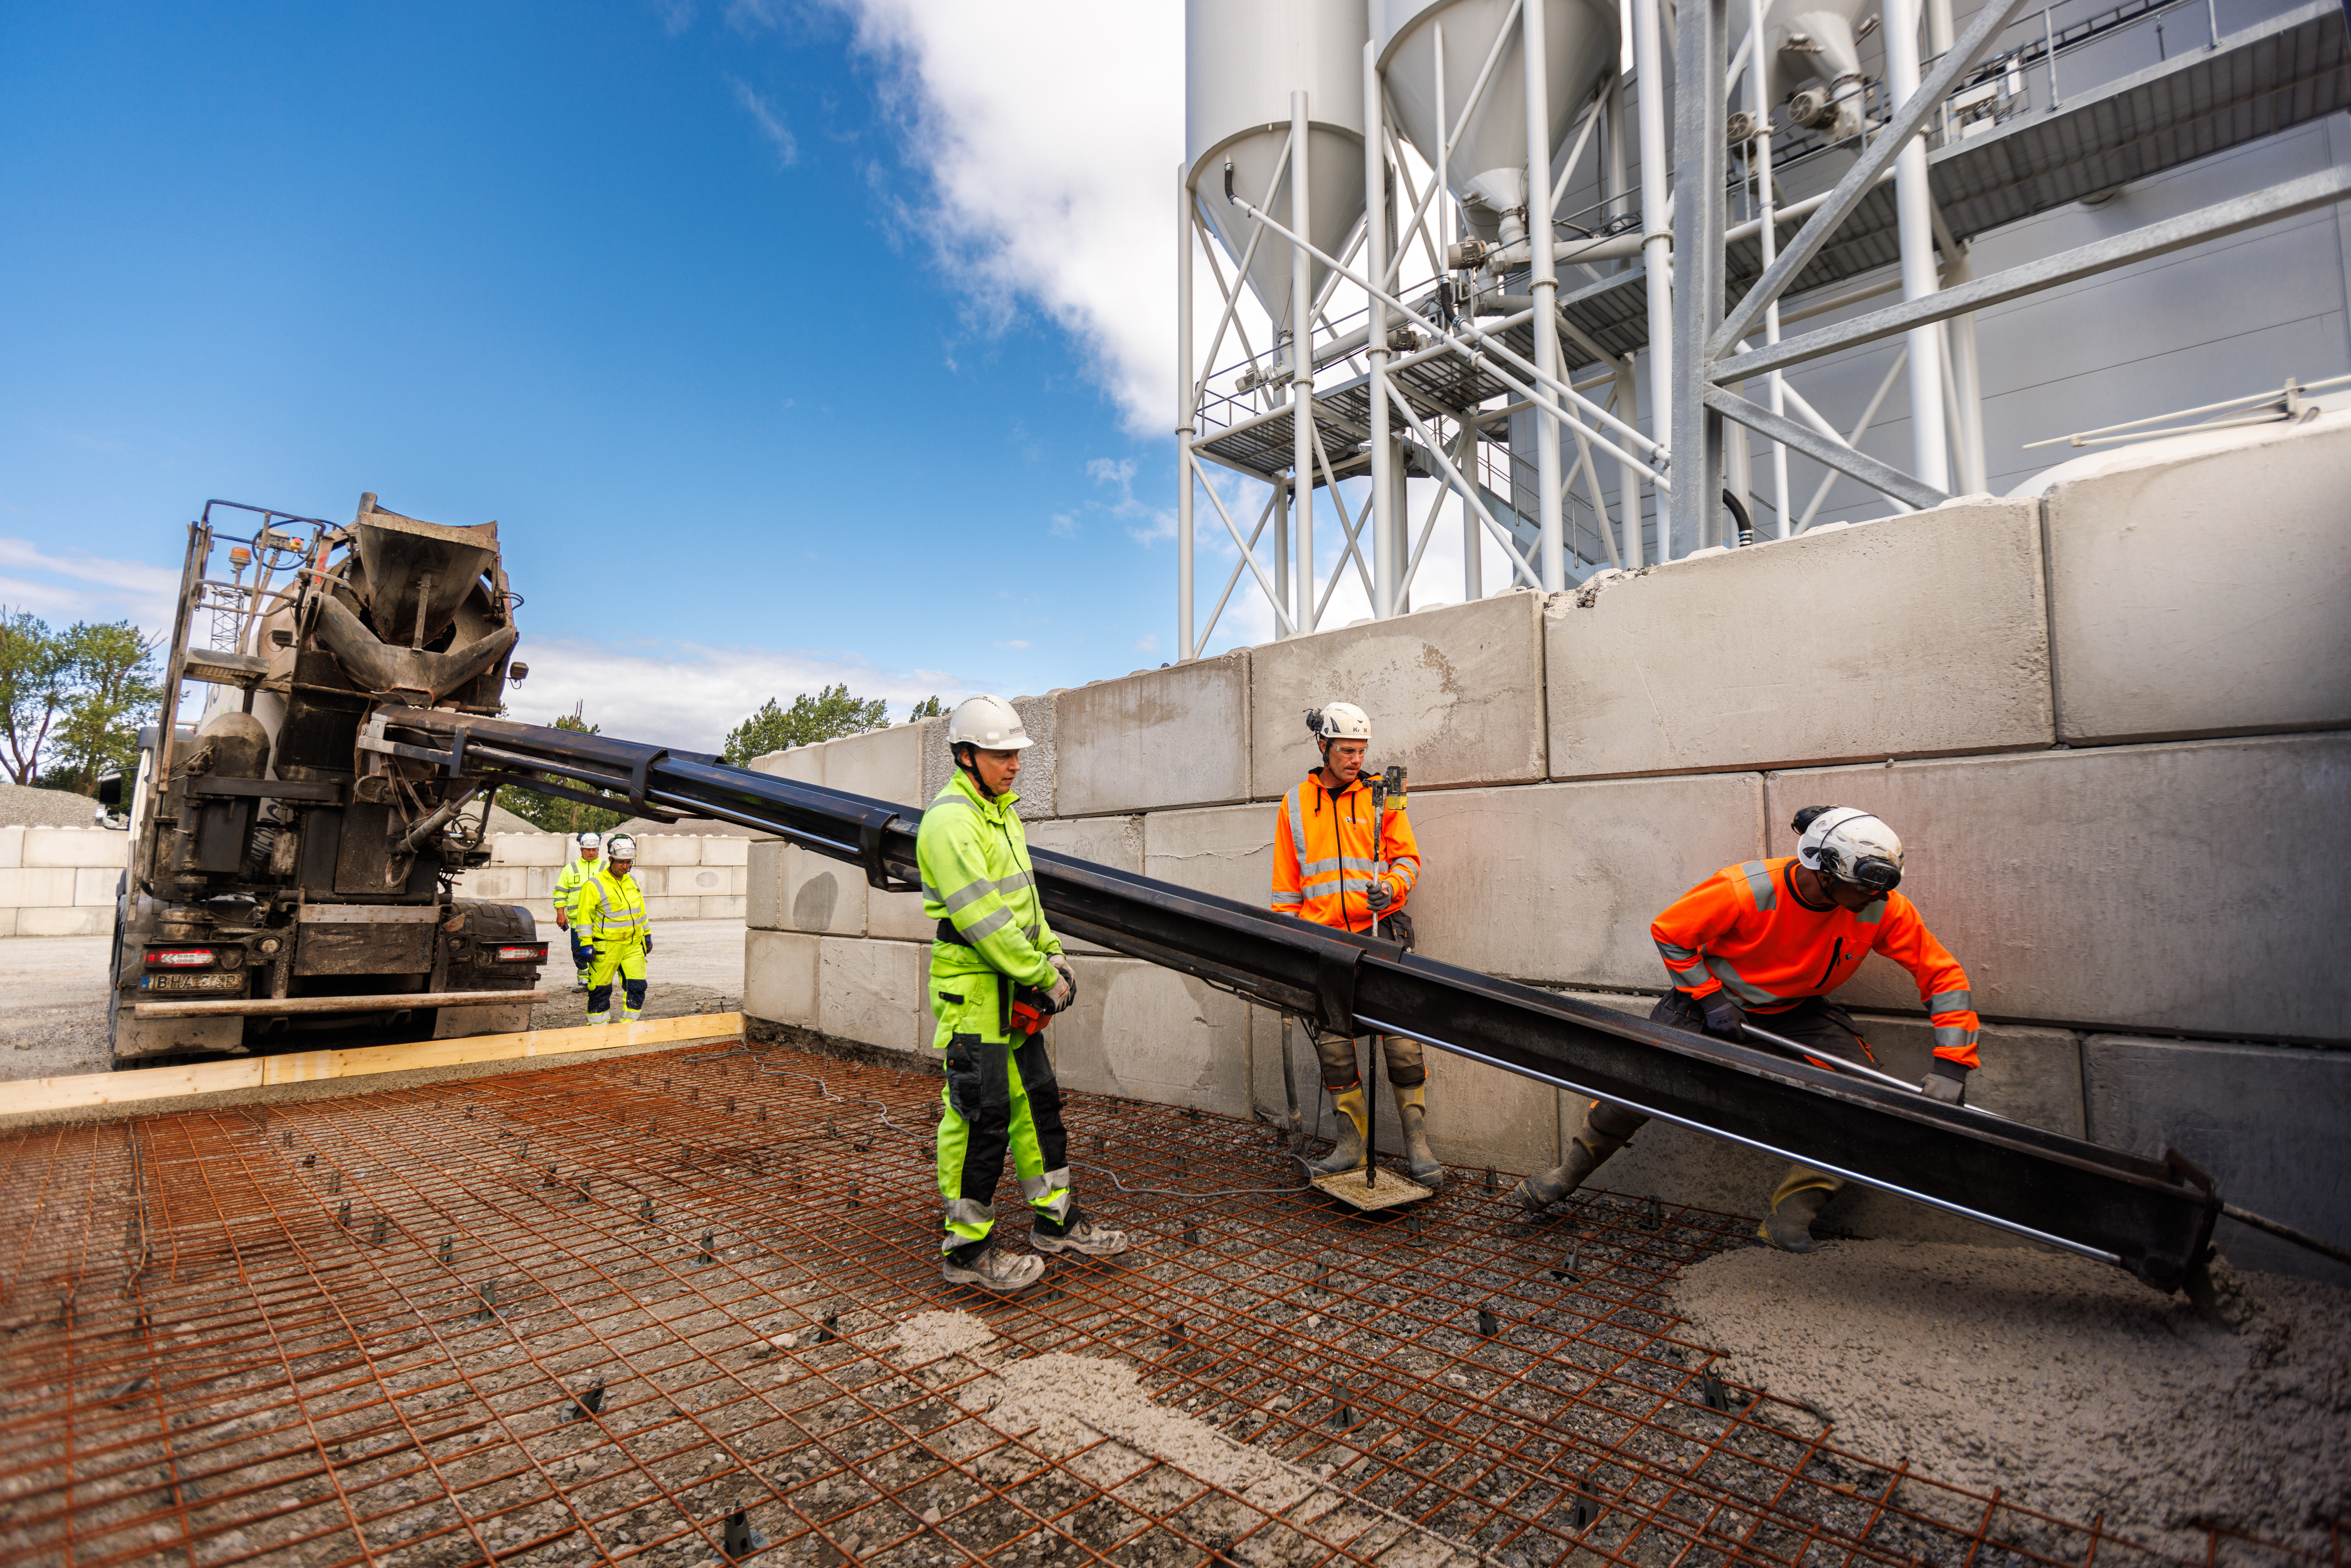 Igår onsdag, genomfördes den första gjutningen av fabriksbetong med ett nära noll utsläpp av koldioxid. Premiären ägde rum vid Swerocks fabrik i Malmö där gjutningen bestod av en yta på 60 kvadratmeter.